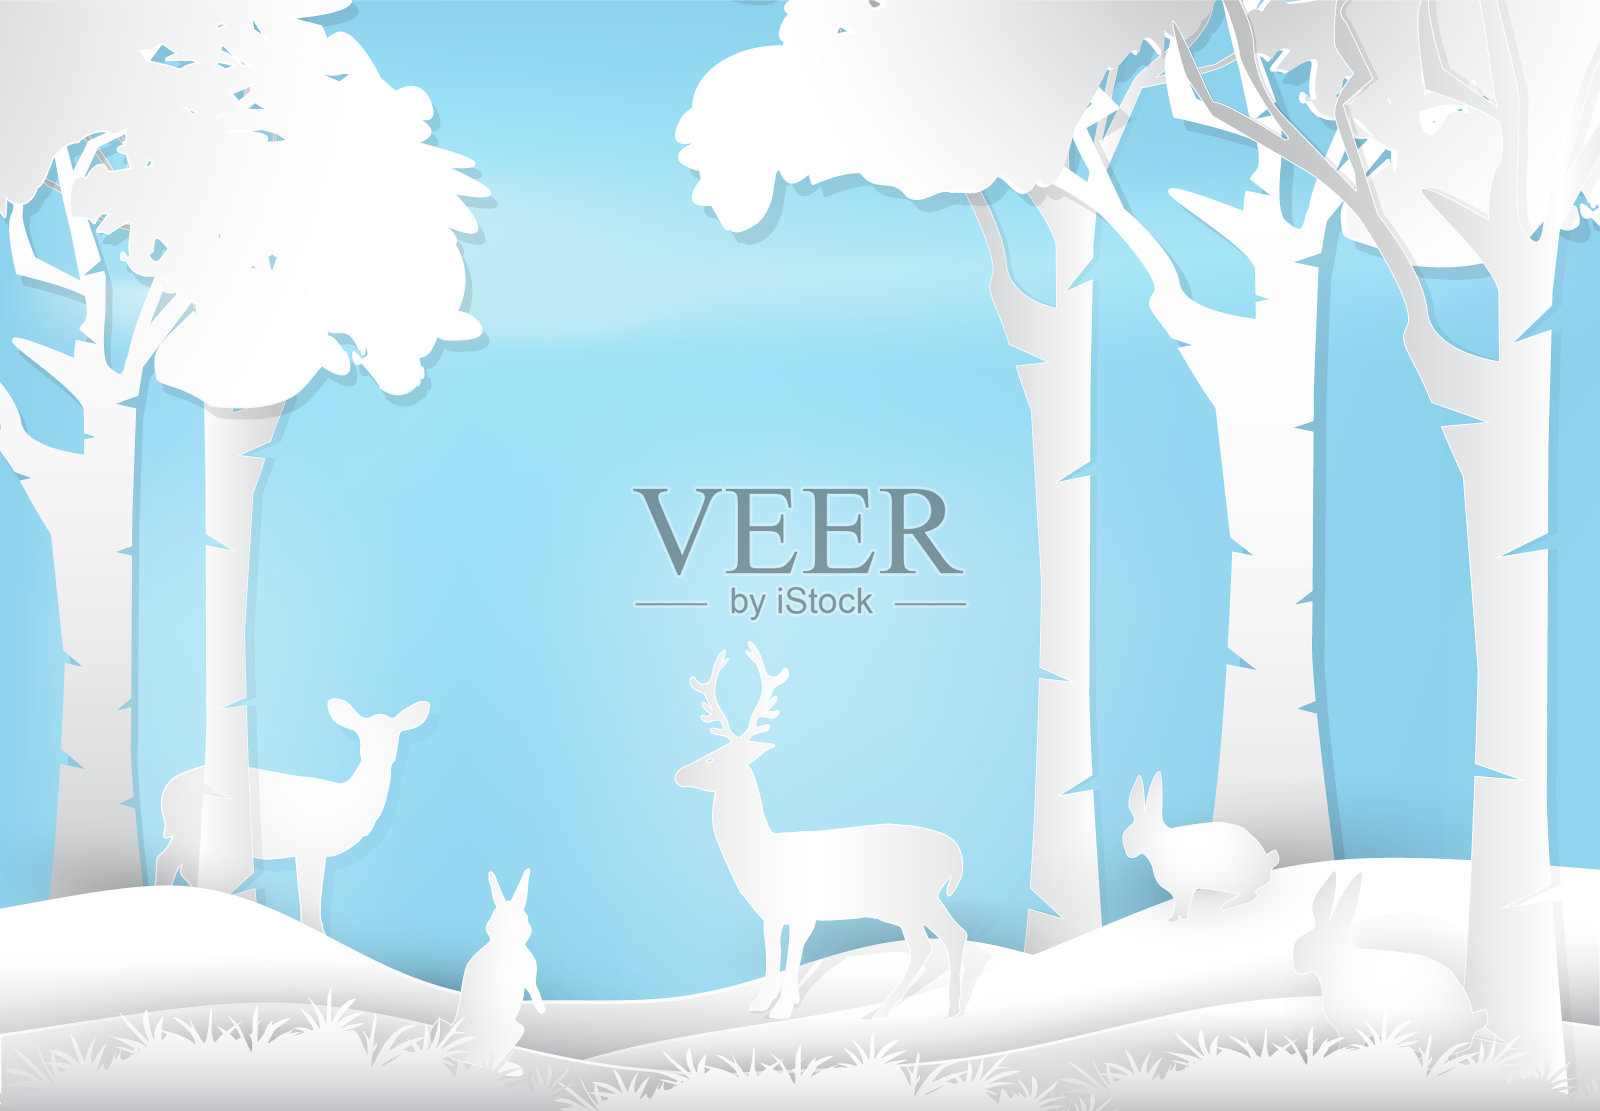 鹿和兔子站在森林里。自然景观背景纸艺术风格插画。插画图片素材